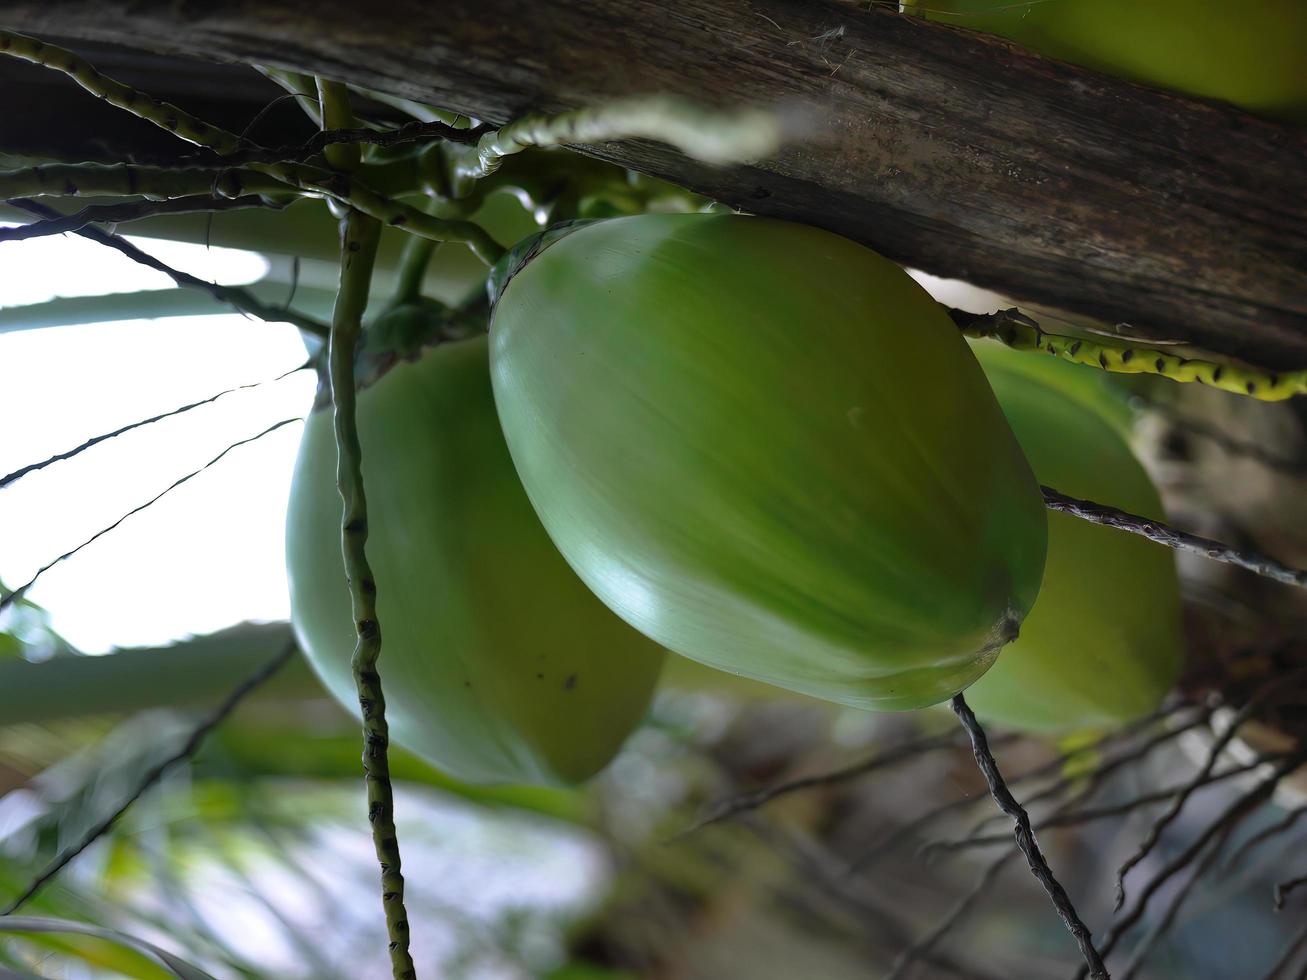 låg vinkel se av grön kokosnötter med klasar på de träd, kokos handflatan träd i himmel bakgrund foto